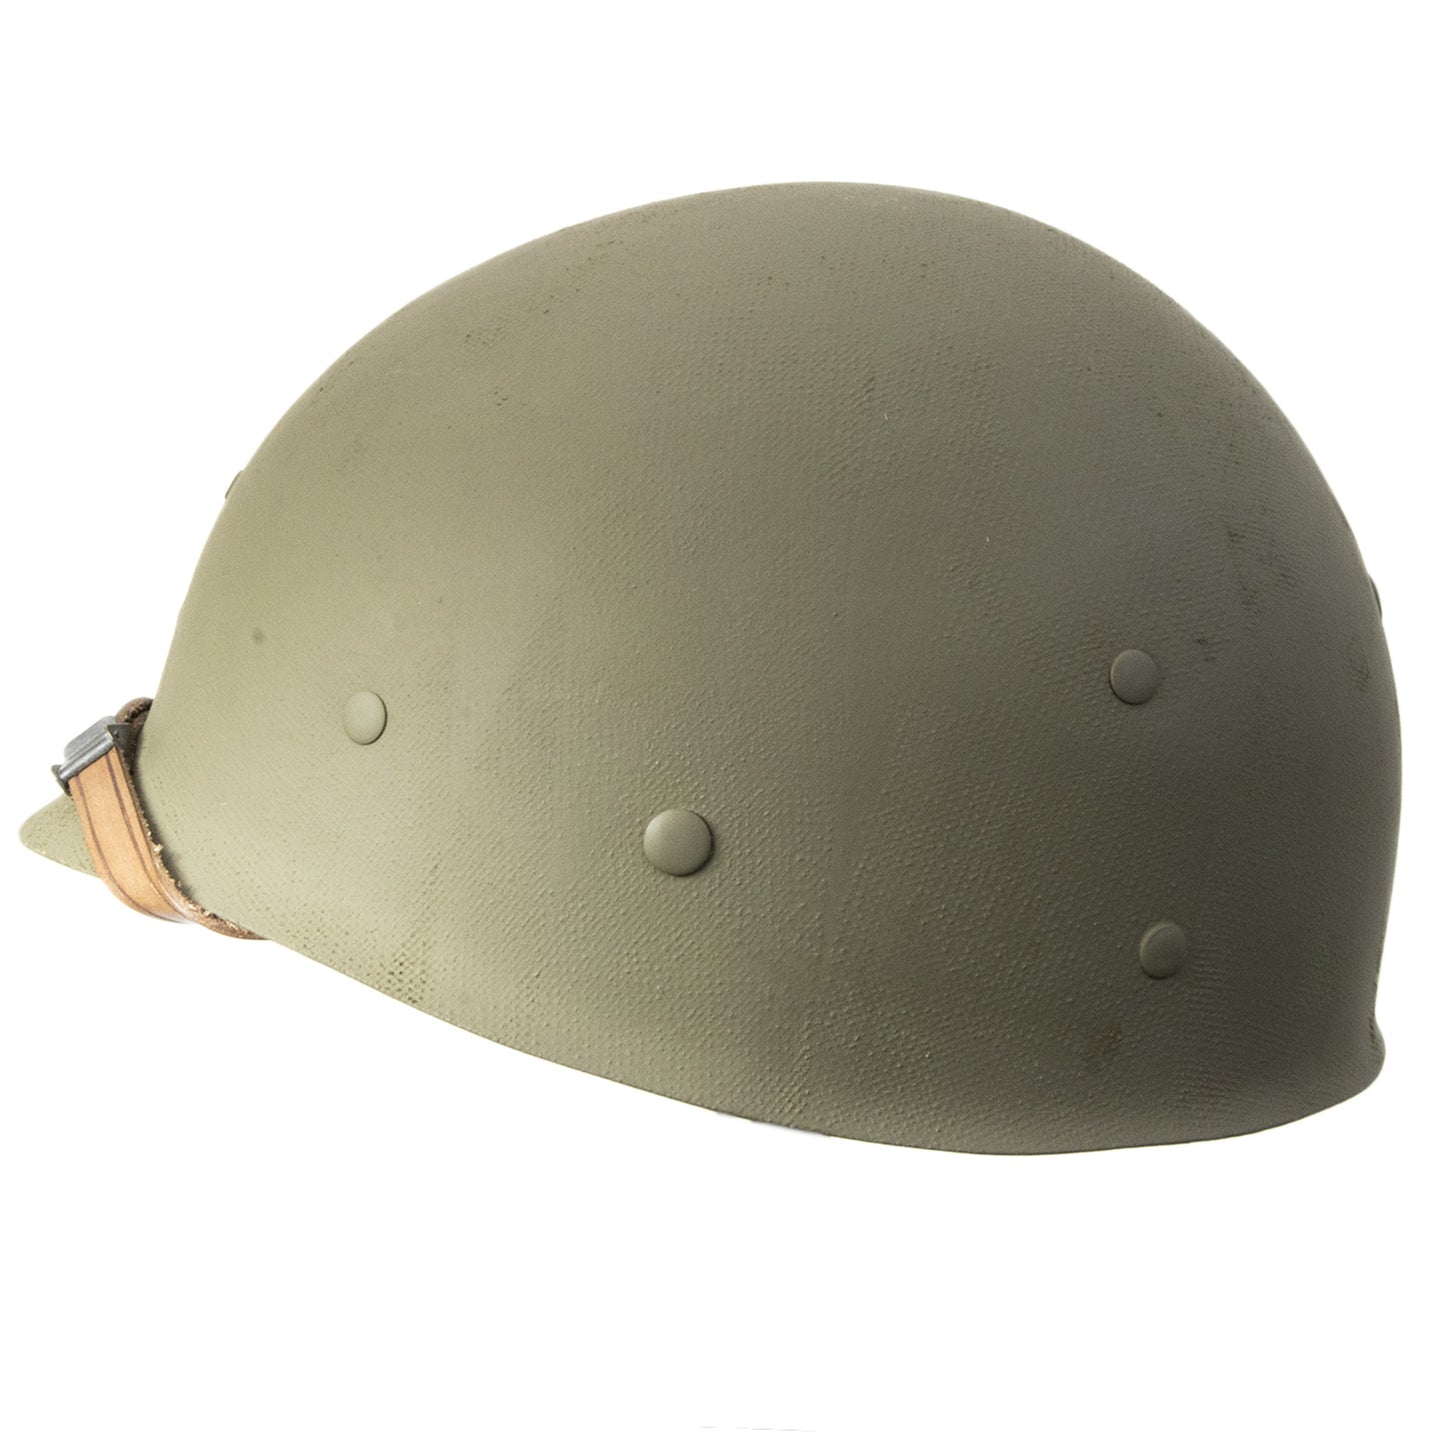 Liner fibre infanterie d'origine Allemande pour casque US M1 vue de profil